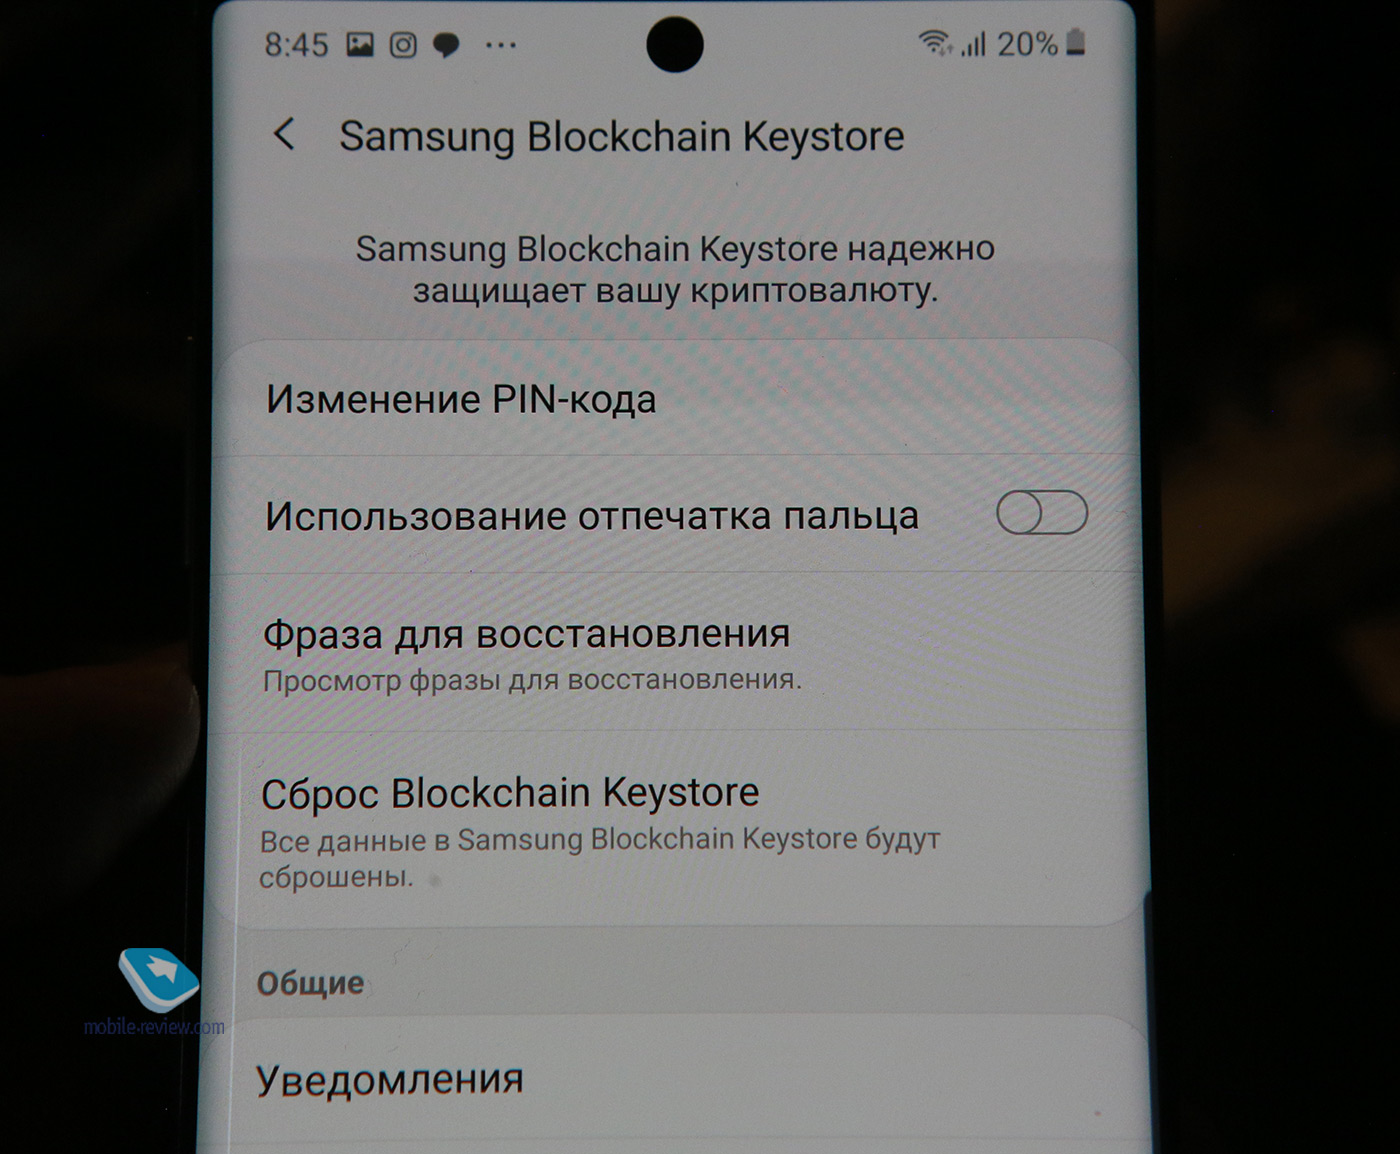 Samsung KNOX - защищенная папка с приложениями, файлами и даже криптовалютой